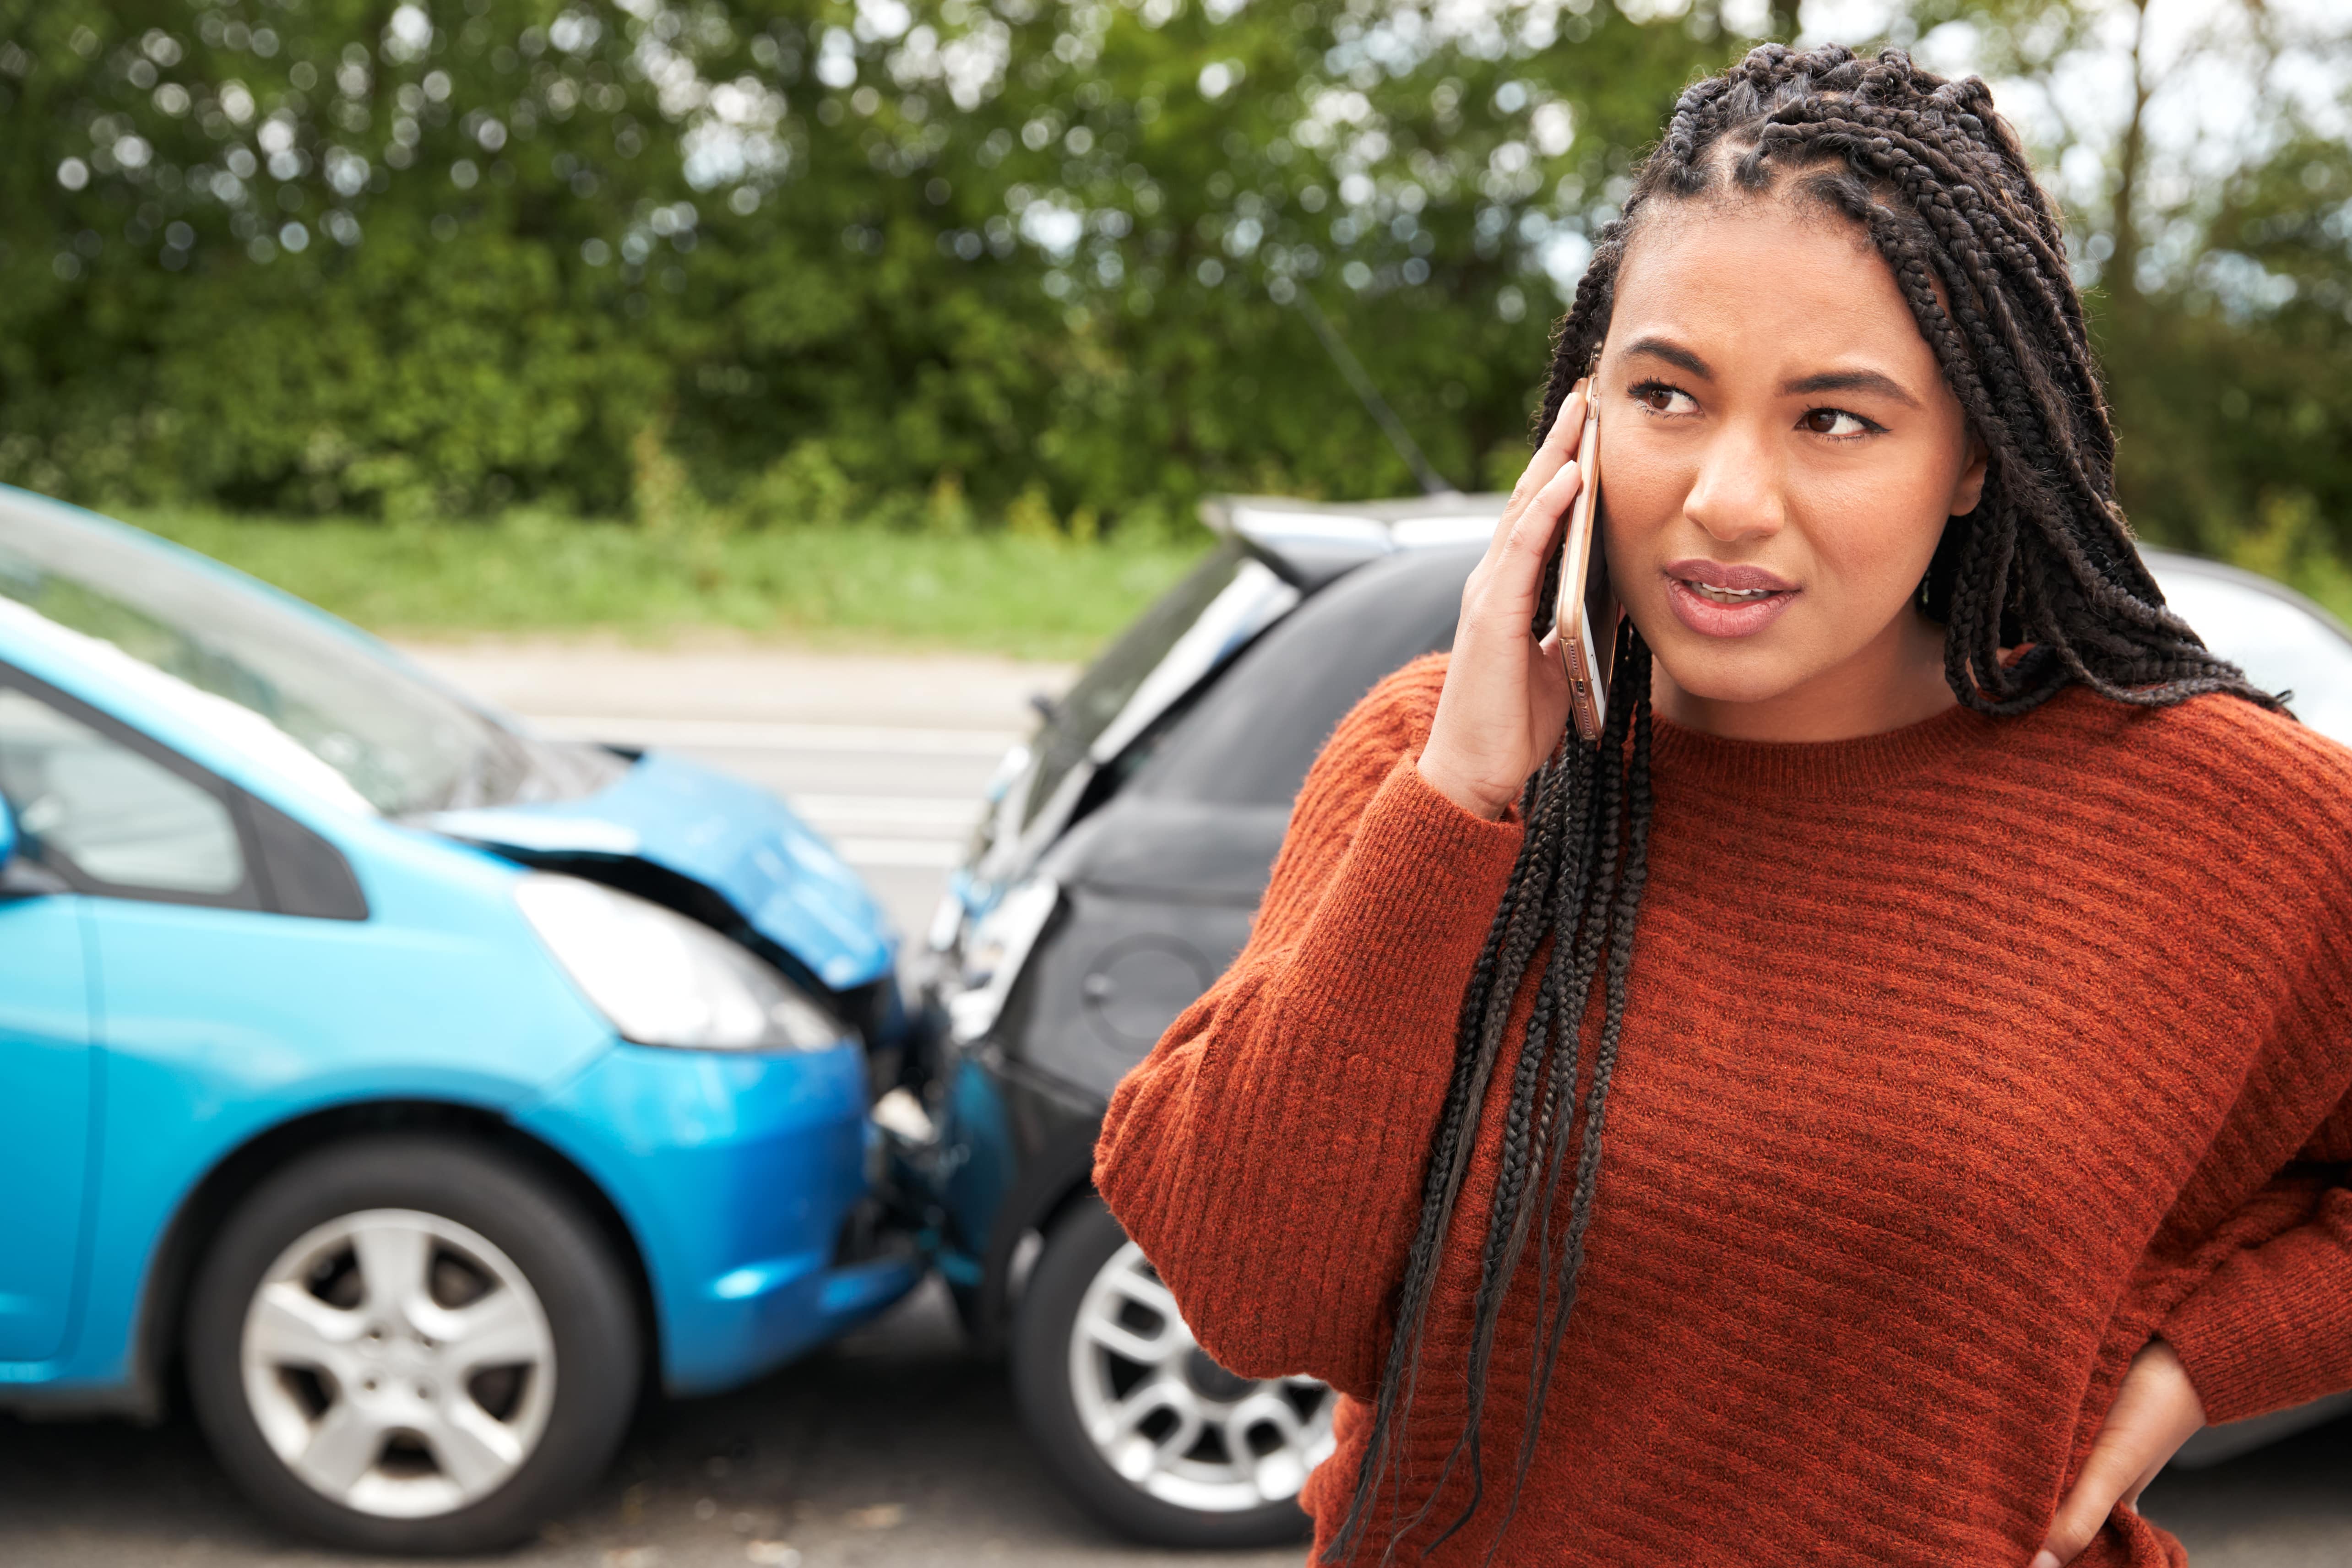 female-motorist-involved-in-car-accident-calling-i-2021-08-26-16-13-16-utc-min.jpg